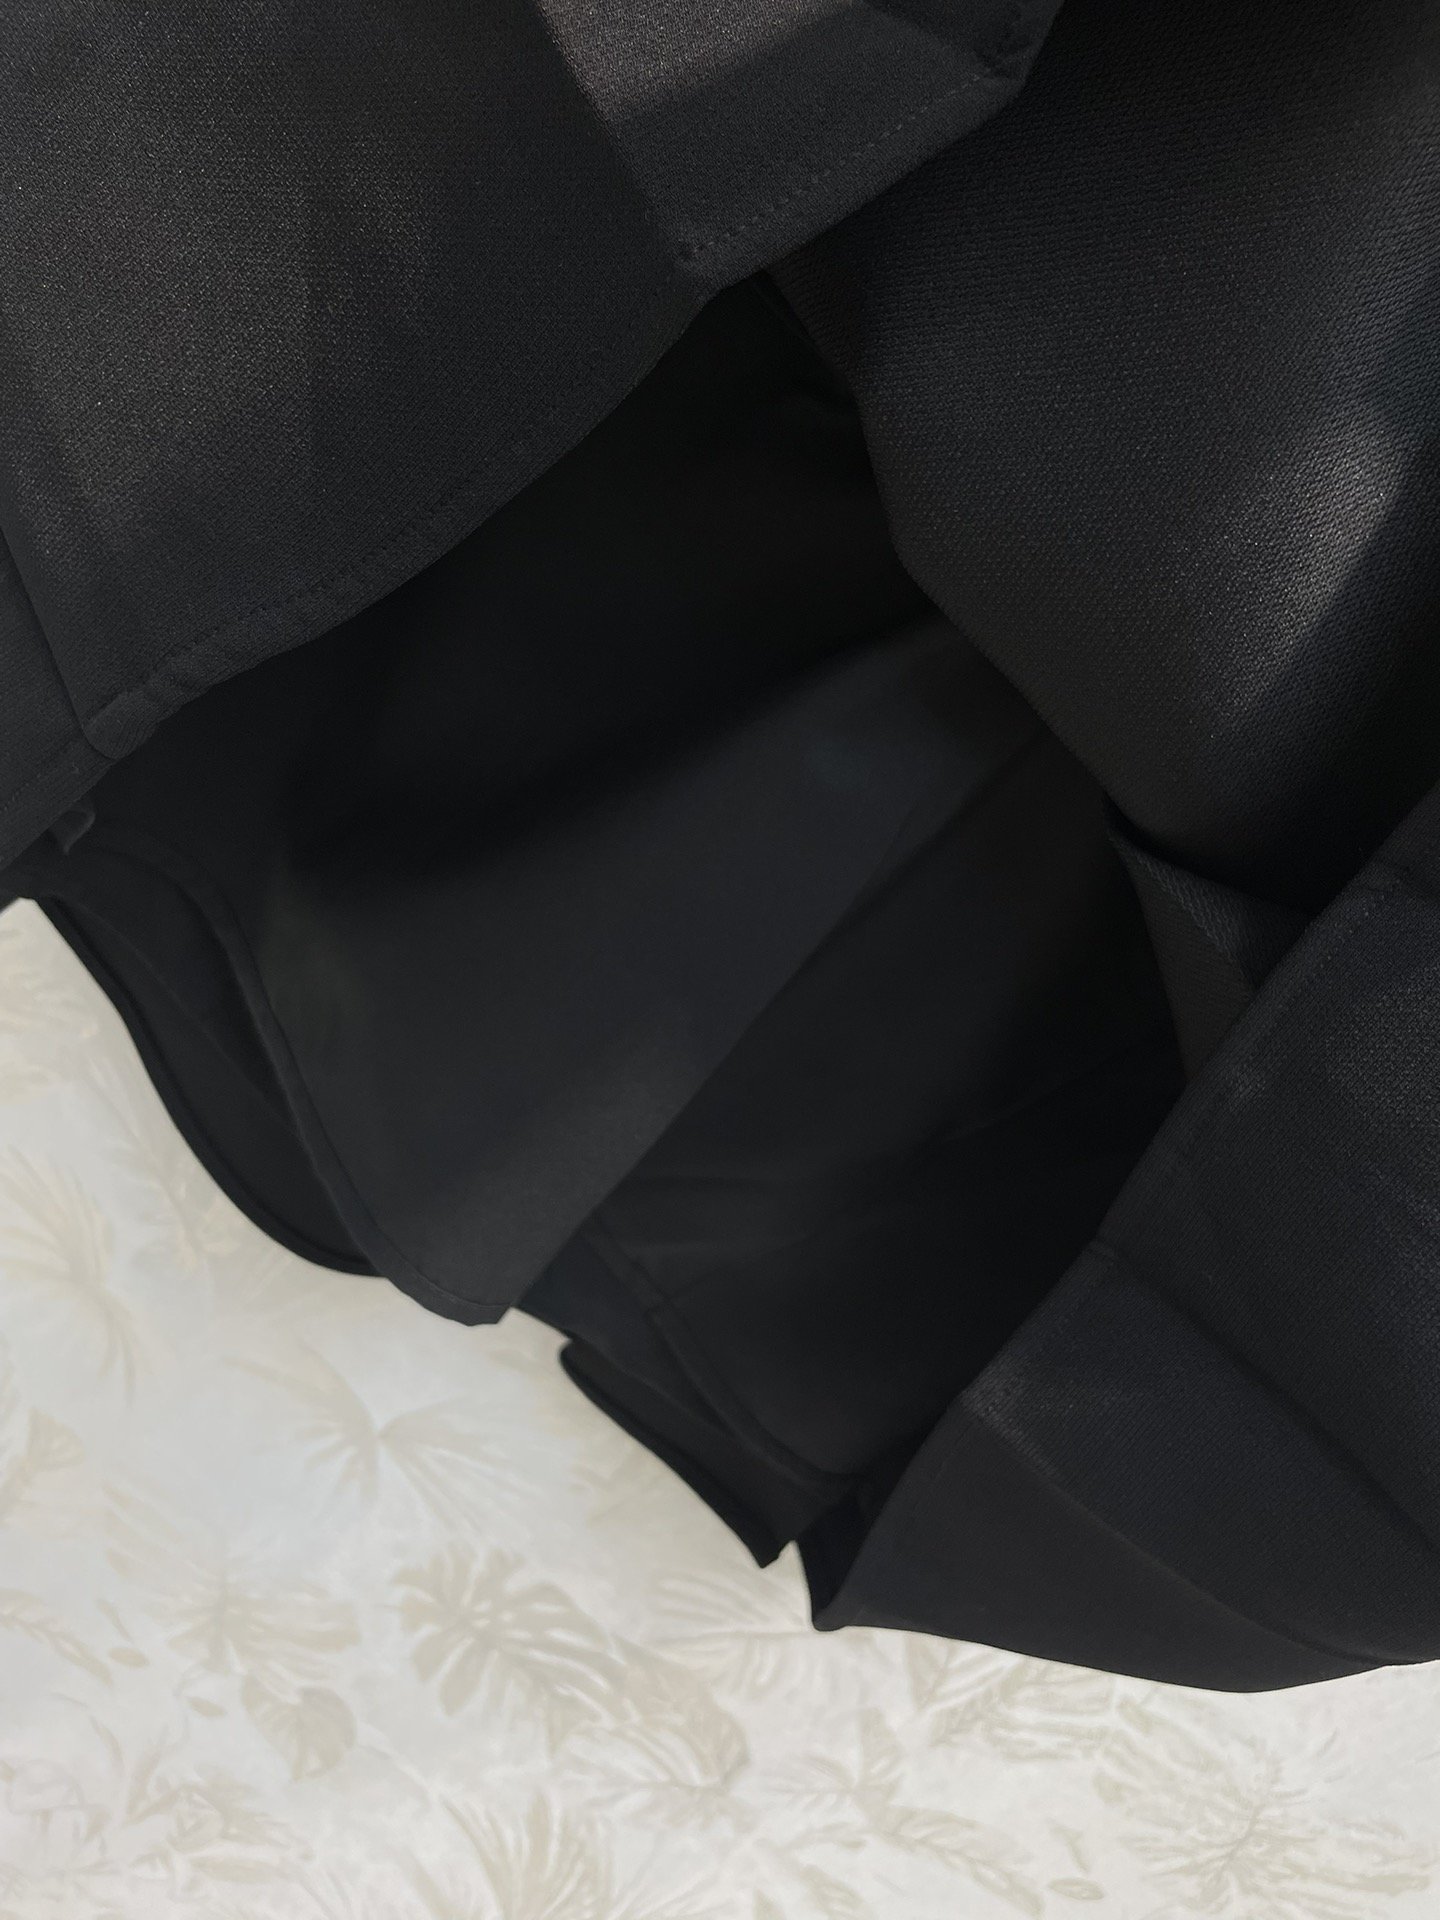 L家24春夏圆领短袖腰带连衣裙按扣可调节腰带饰有该系列标志性的威尔士亲王图案该模型具有绝对精确制作的雕塑